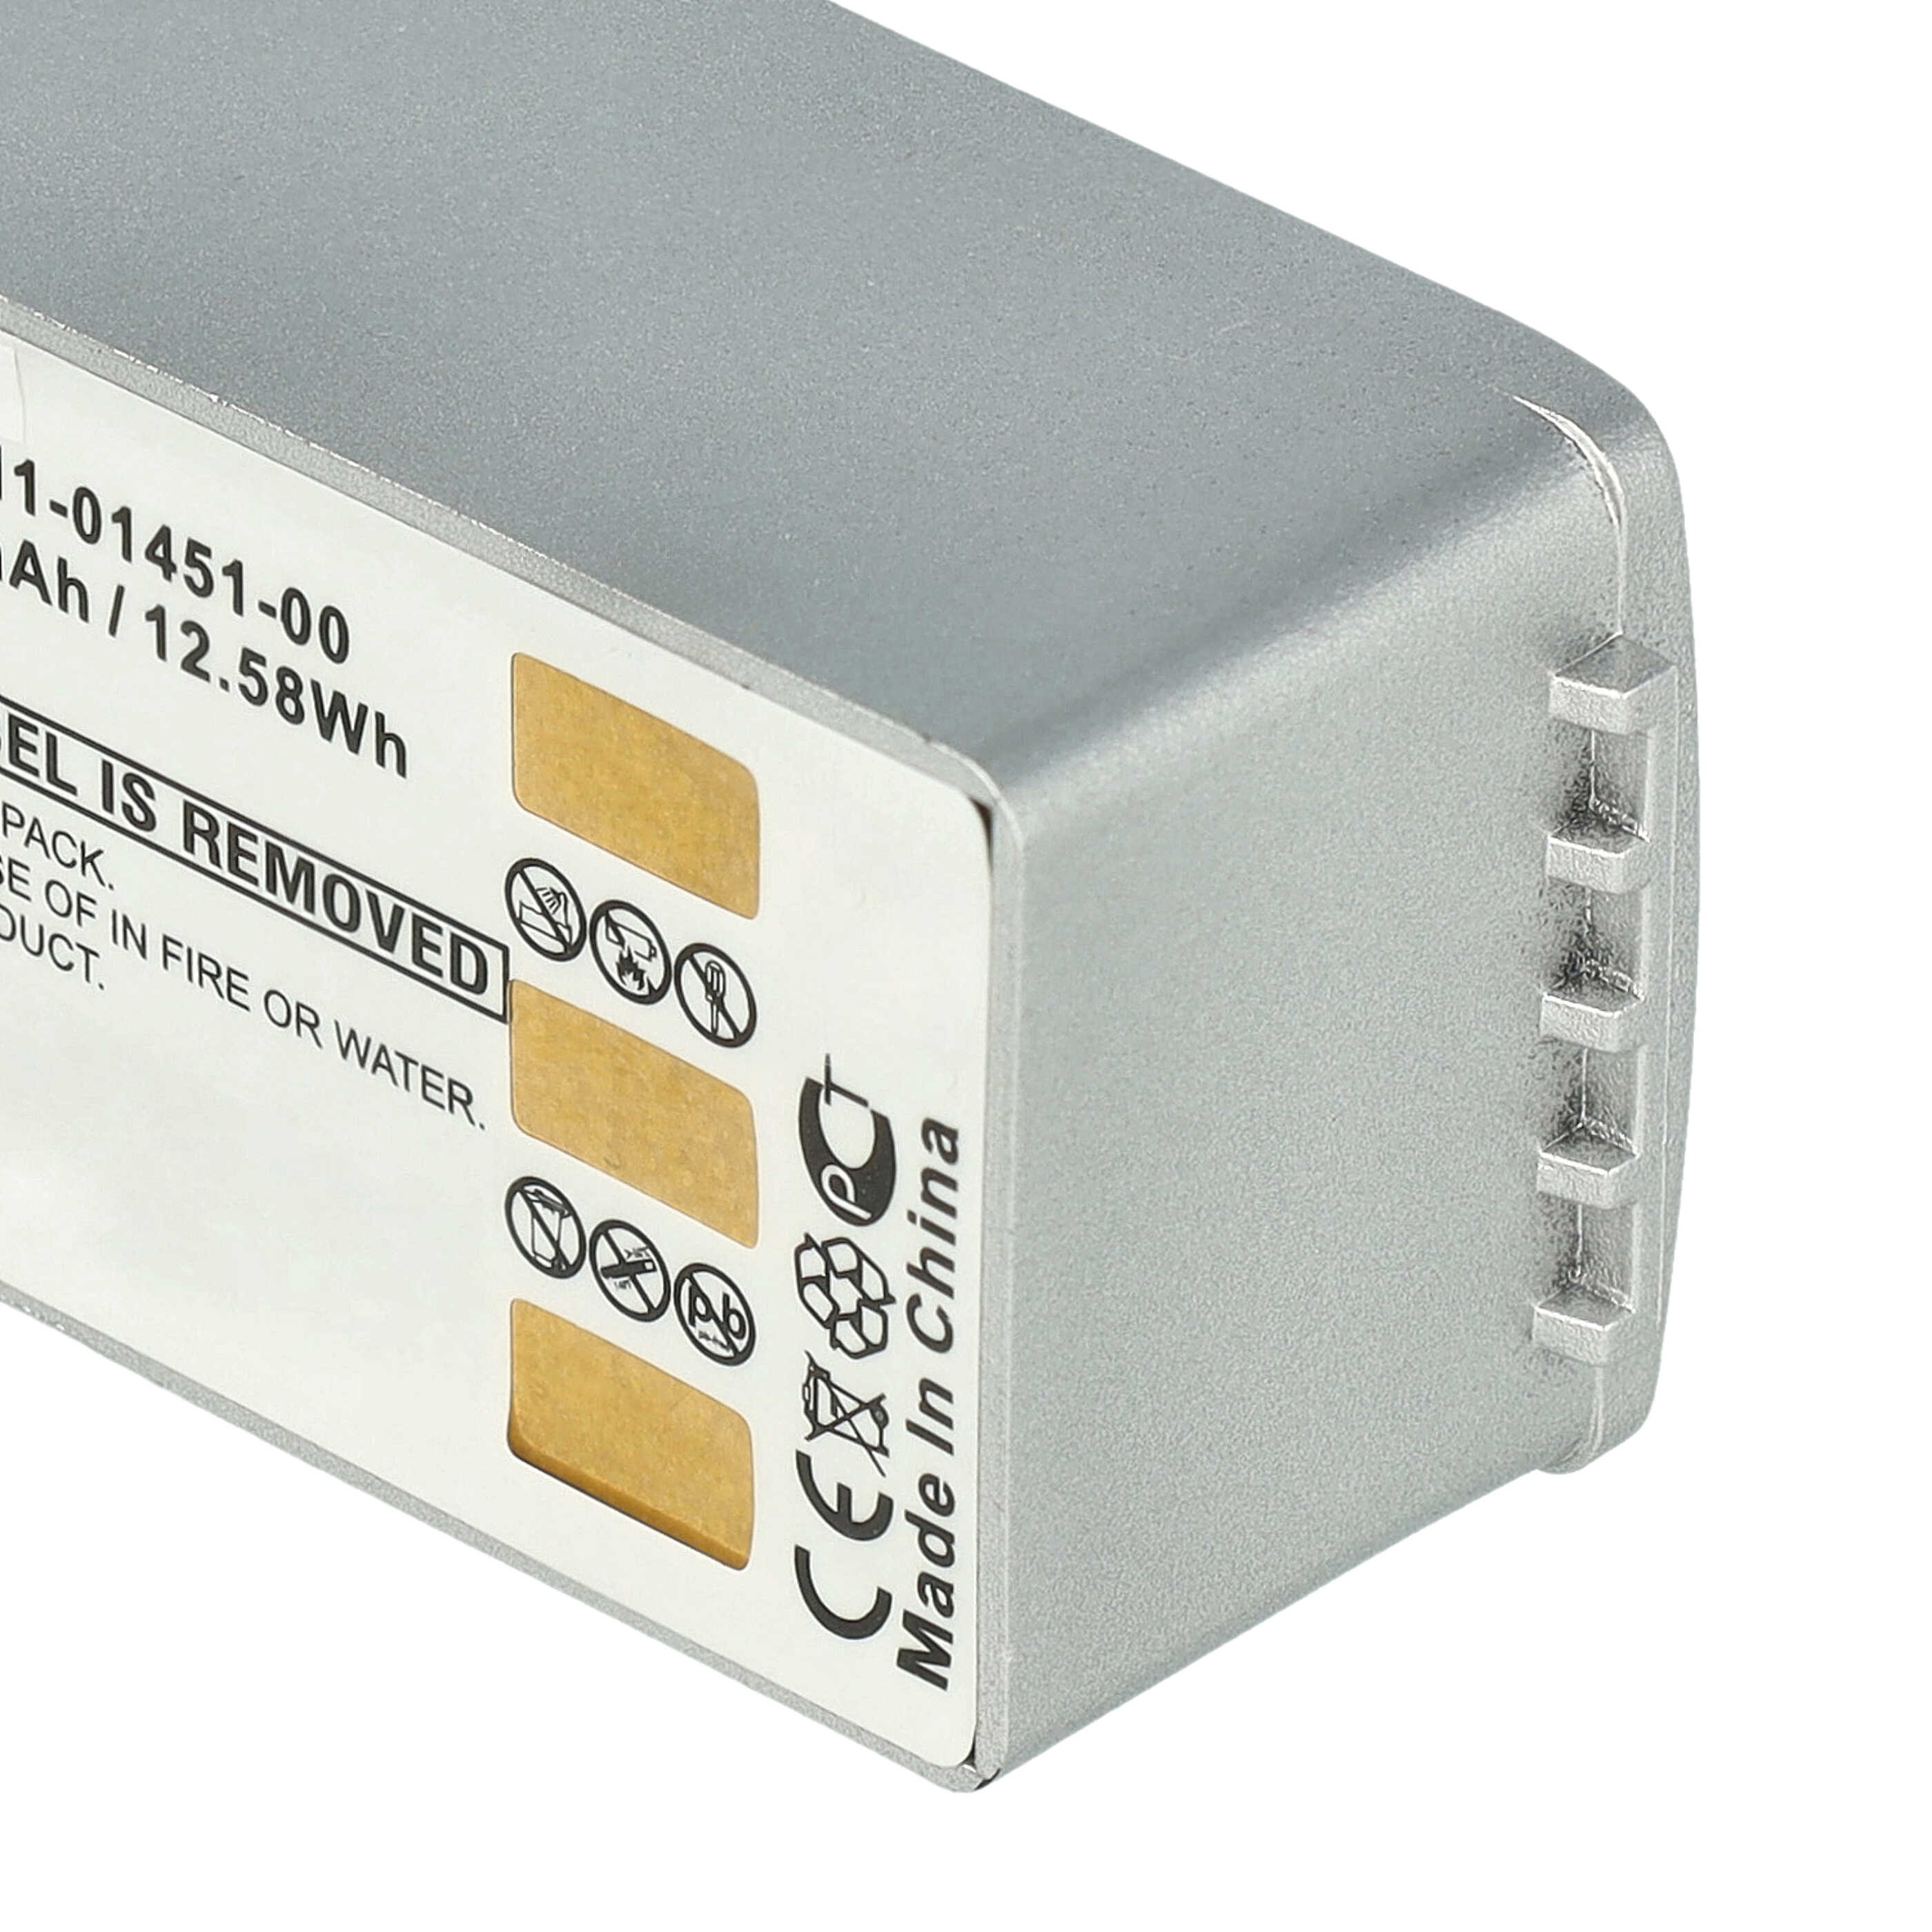 Batterie remplace Garmin 010-10863-00, 011-01451-00 pour navigation GPS - 3400mAh 3,7V Li-ion